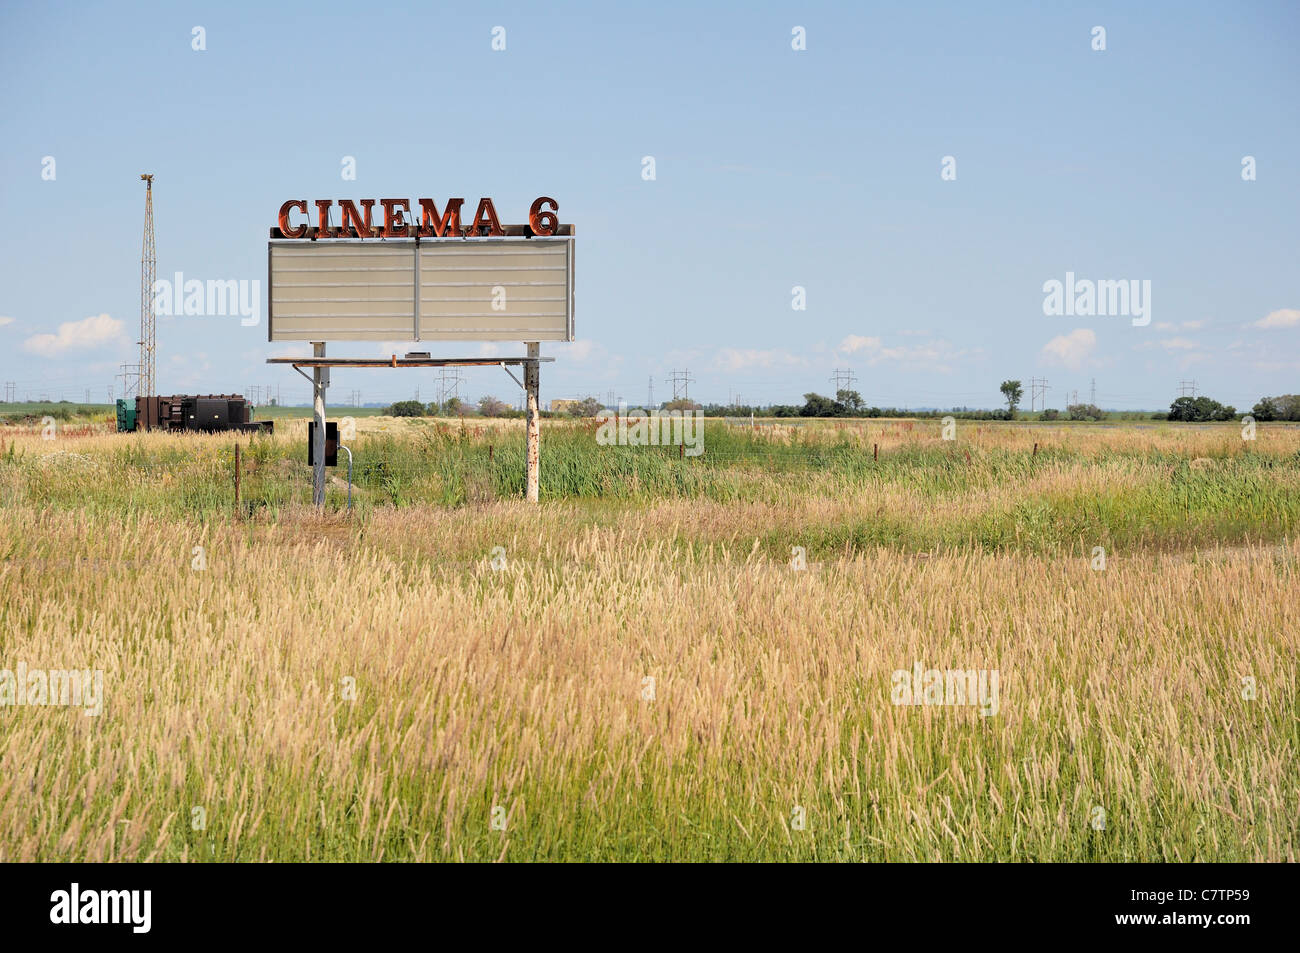 An old cinema drive-in sign in Saskatchewan, Canada. Stock Photo